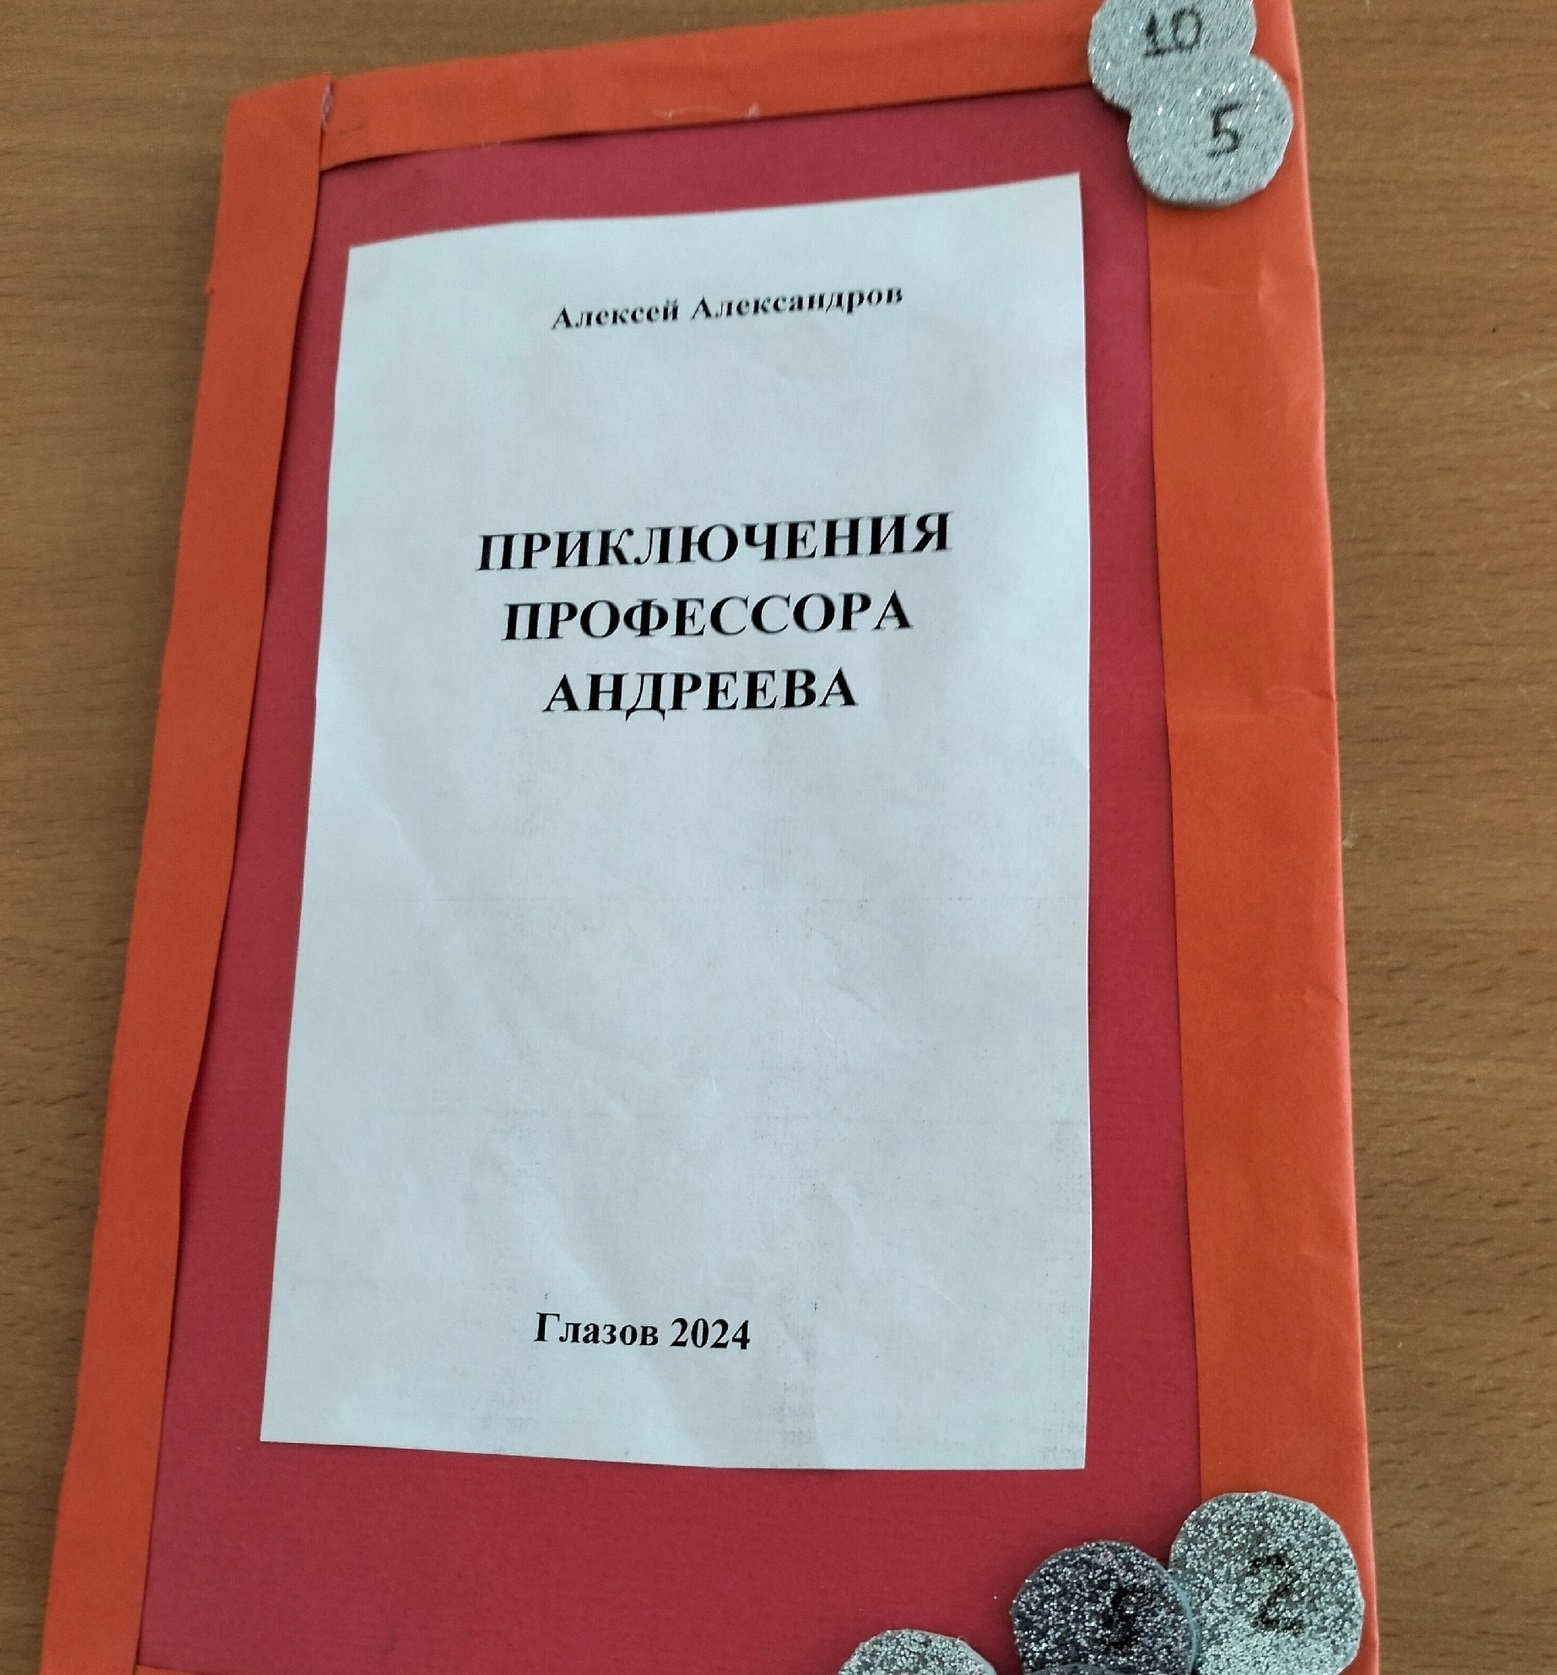 Презентация книги «Приключения профессора Андреева».